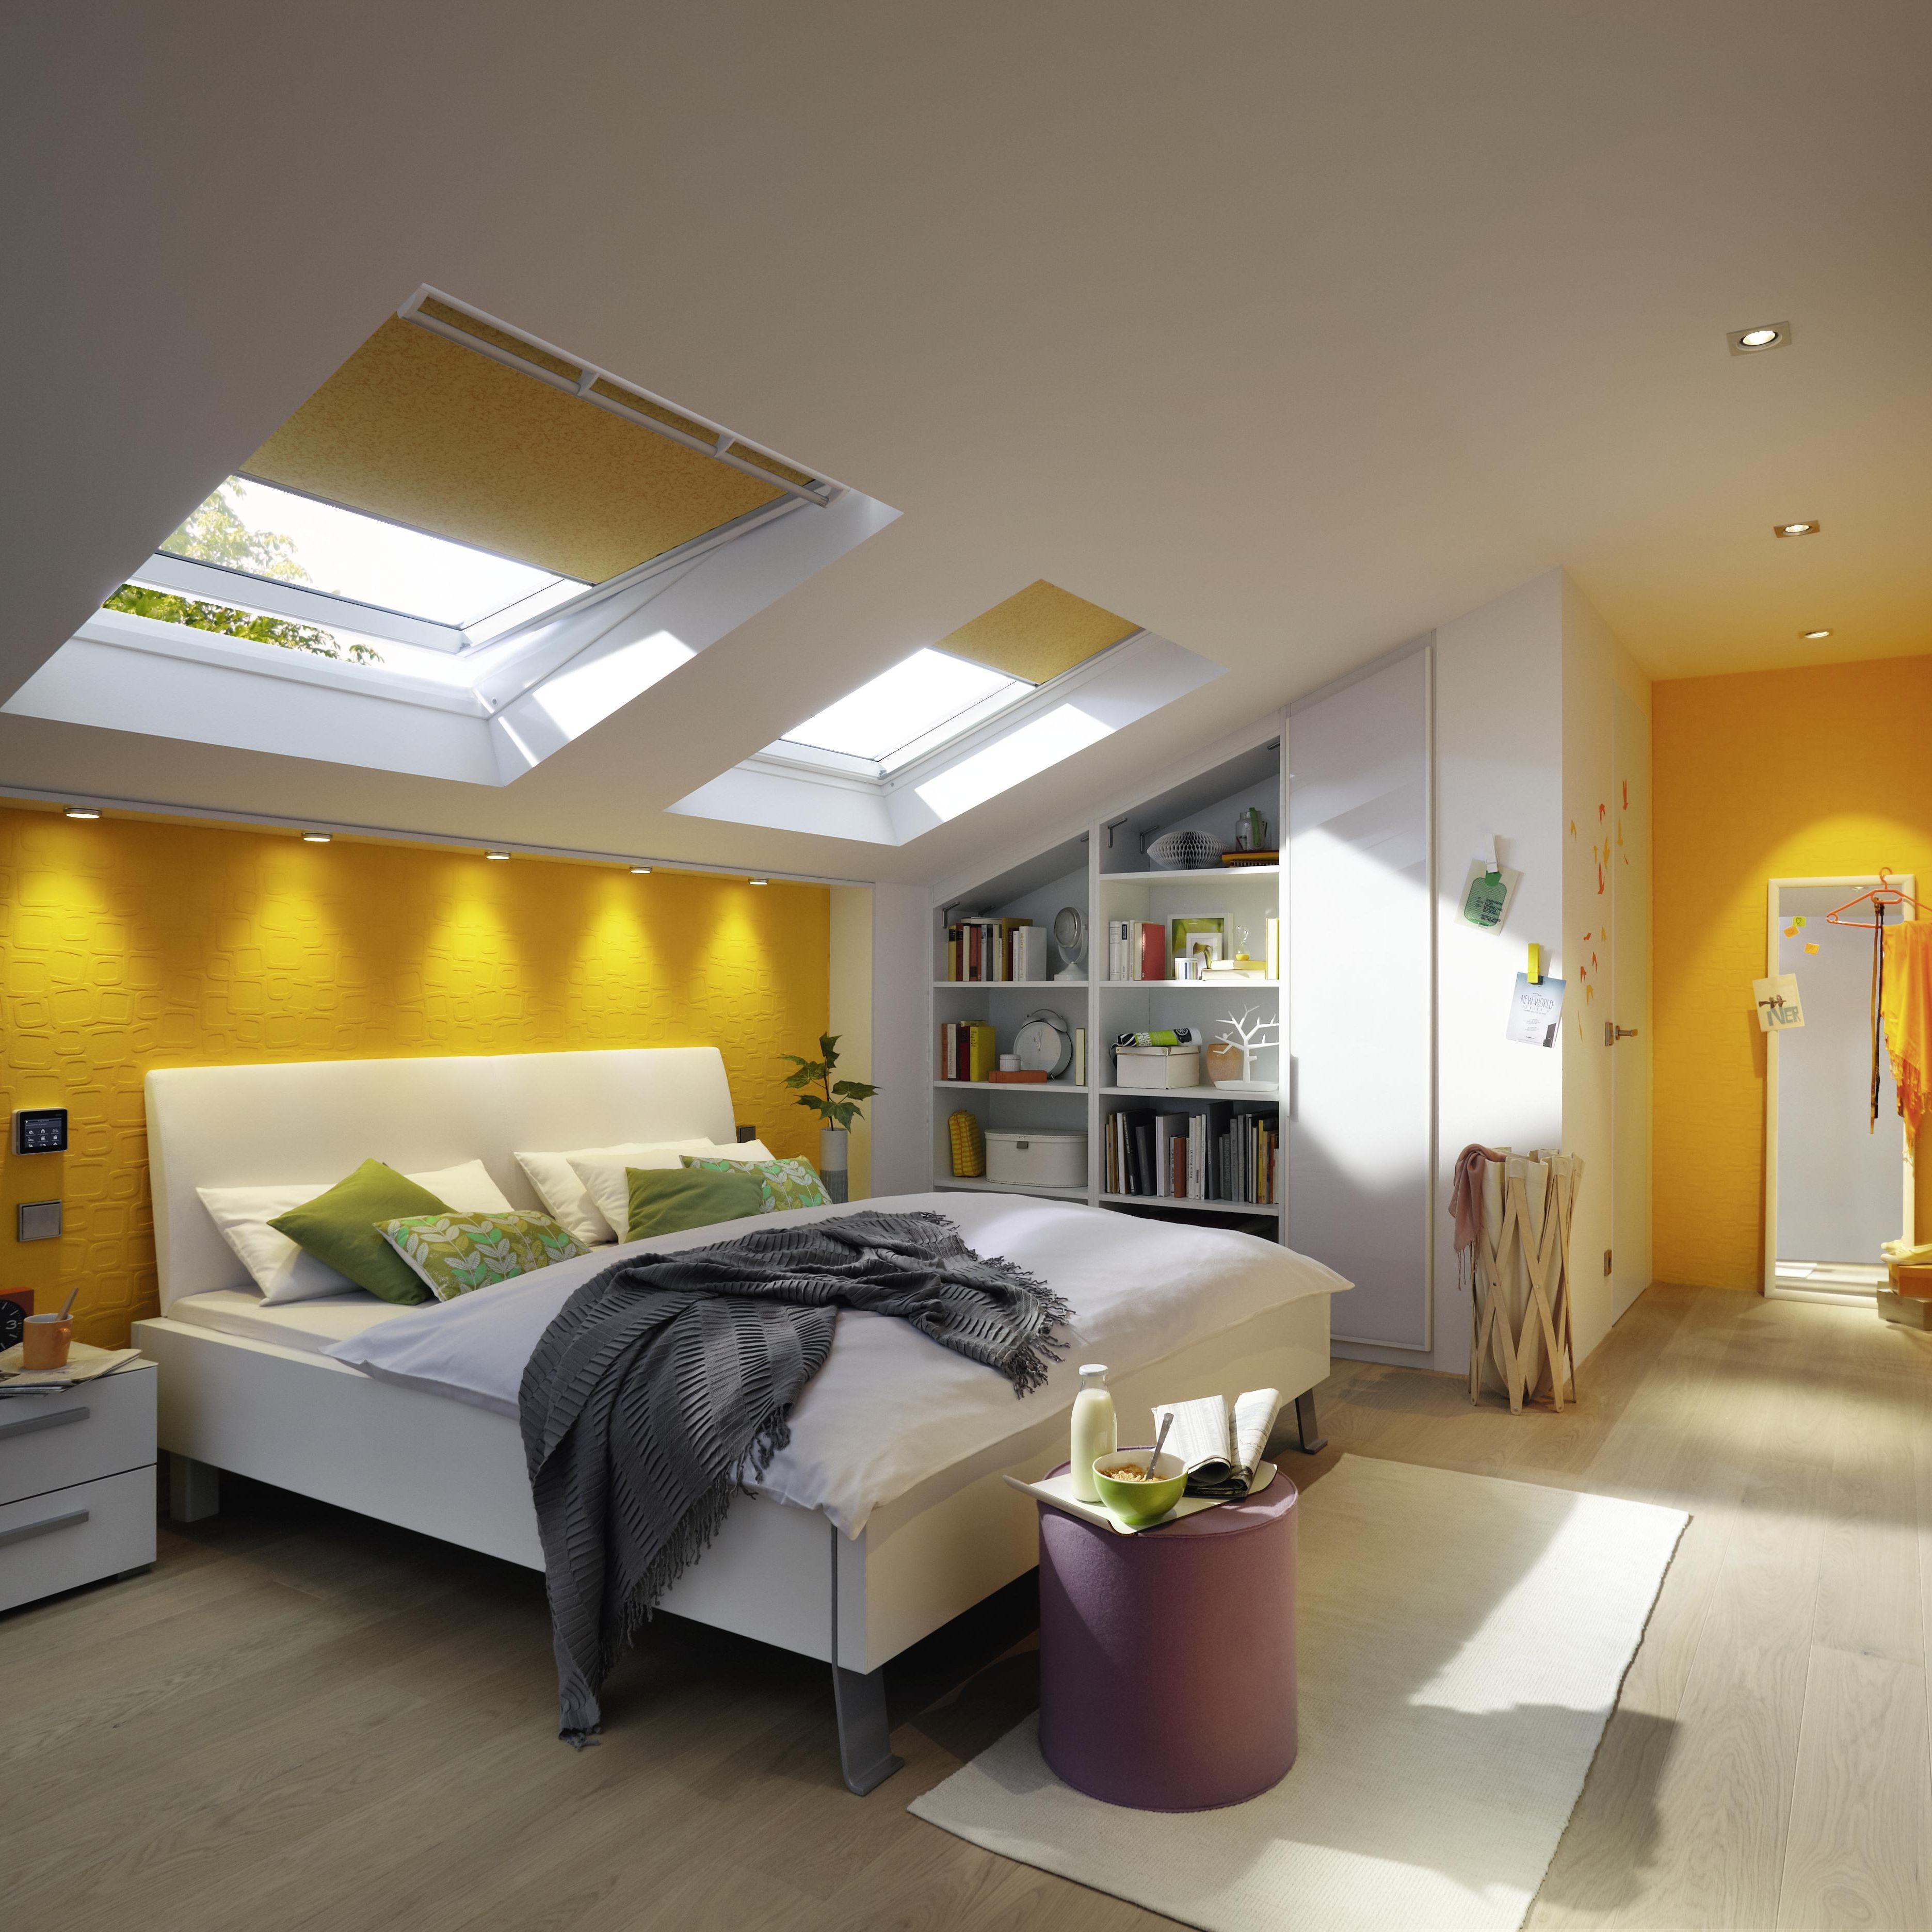 Das weiße Schlafzimmer unter dem Dach mit farbigen Akzenten in Gelb wirkt hell und freundlich.